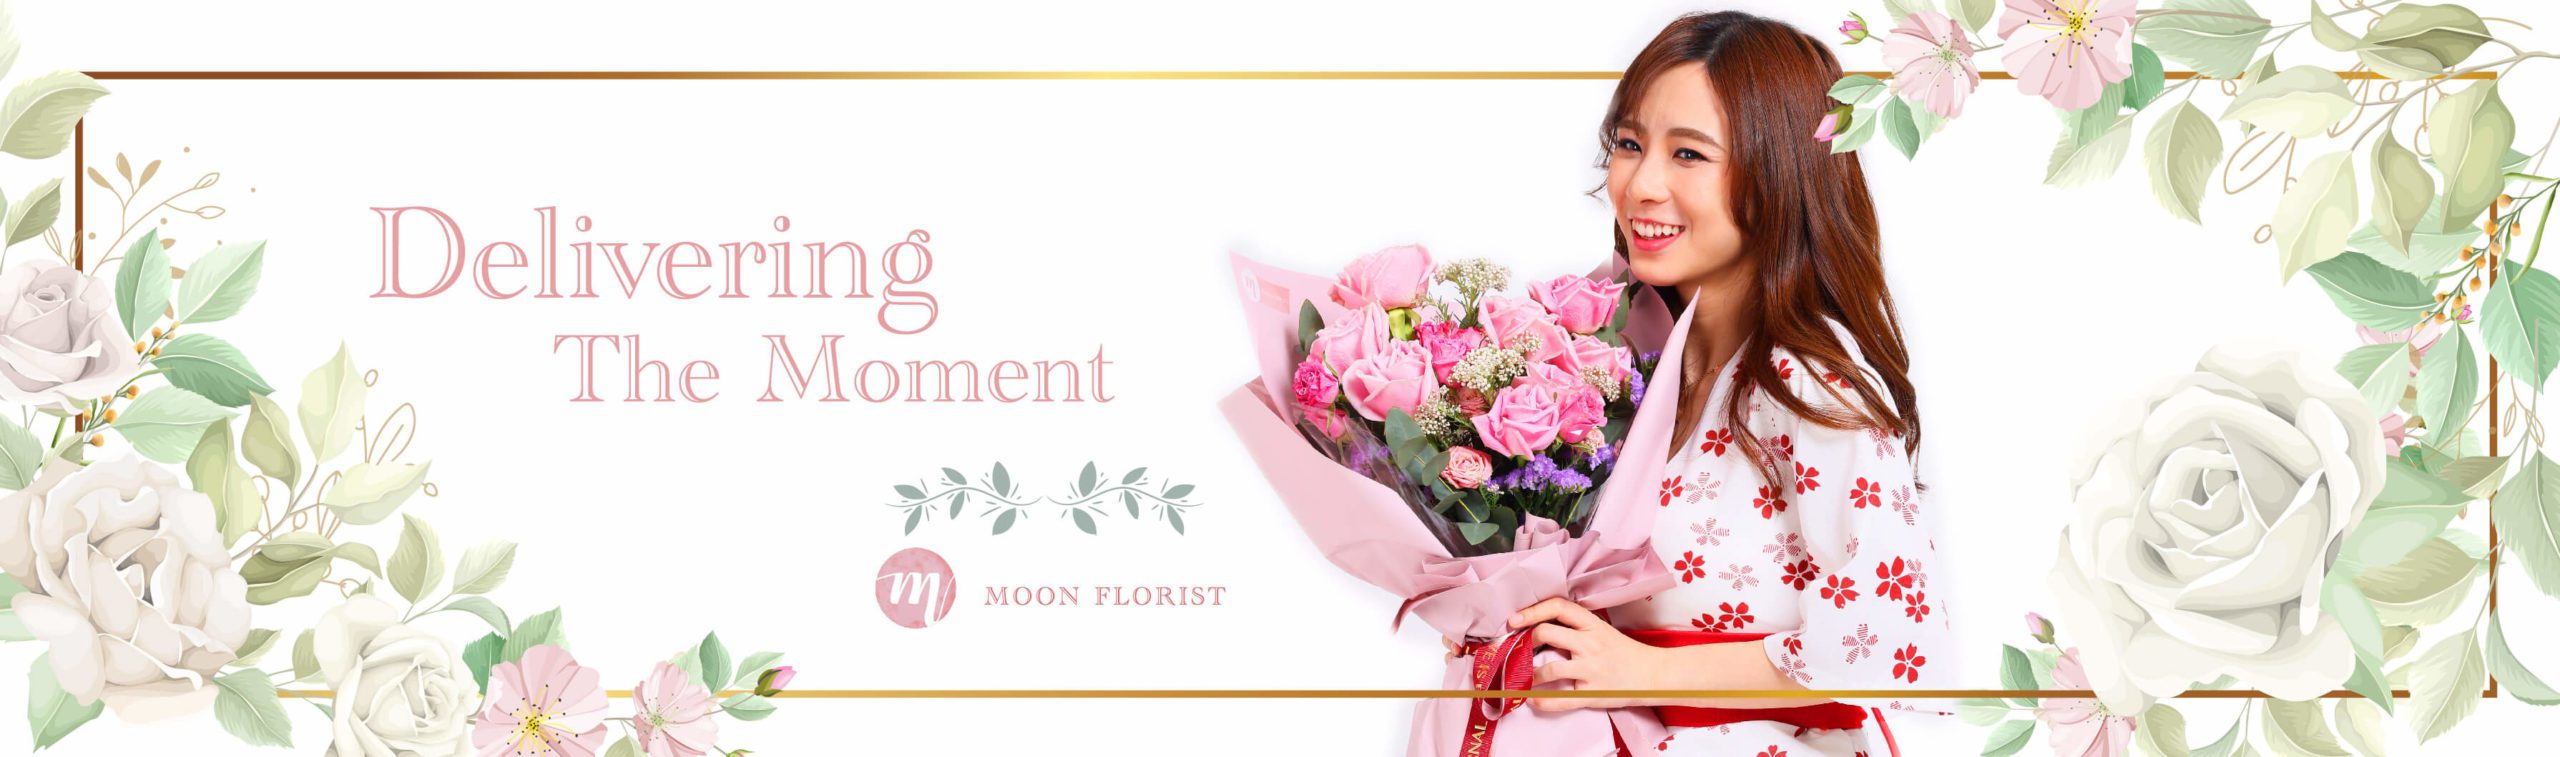 結婚花球, 襟花, Moon Florist -model banner